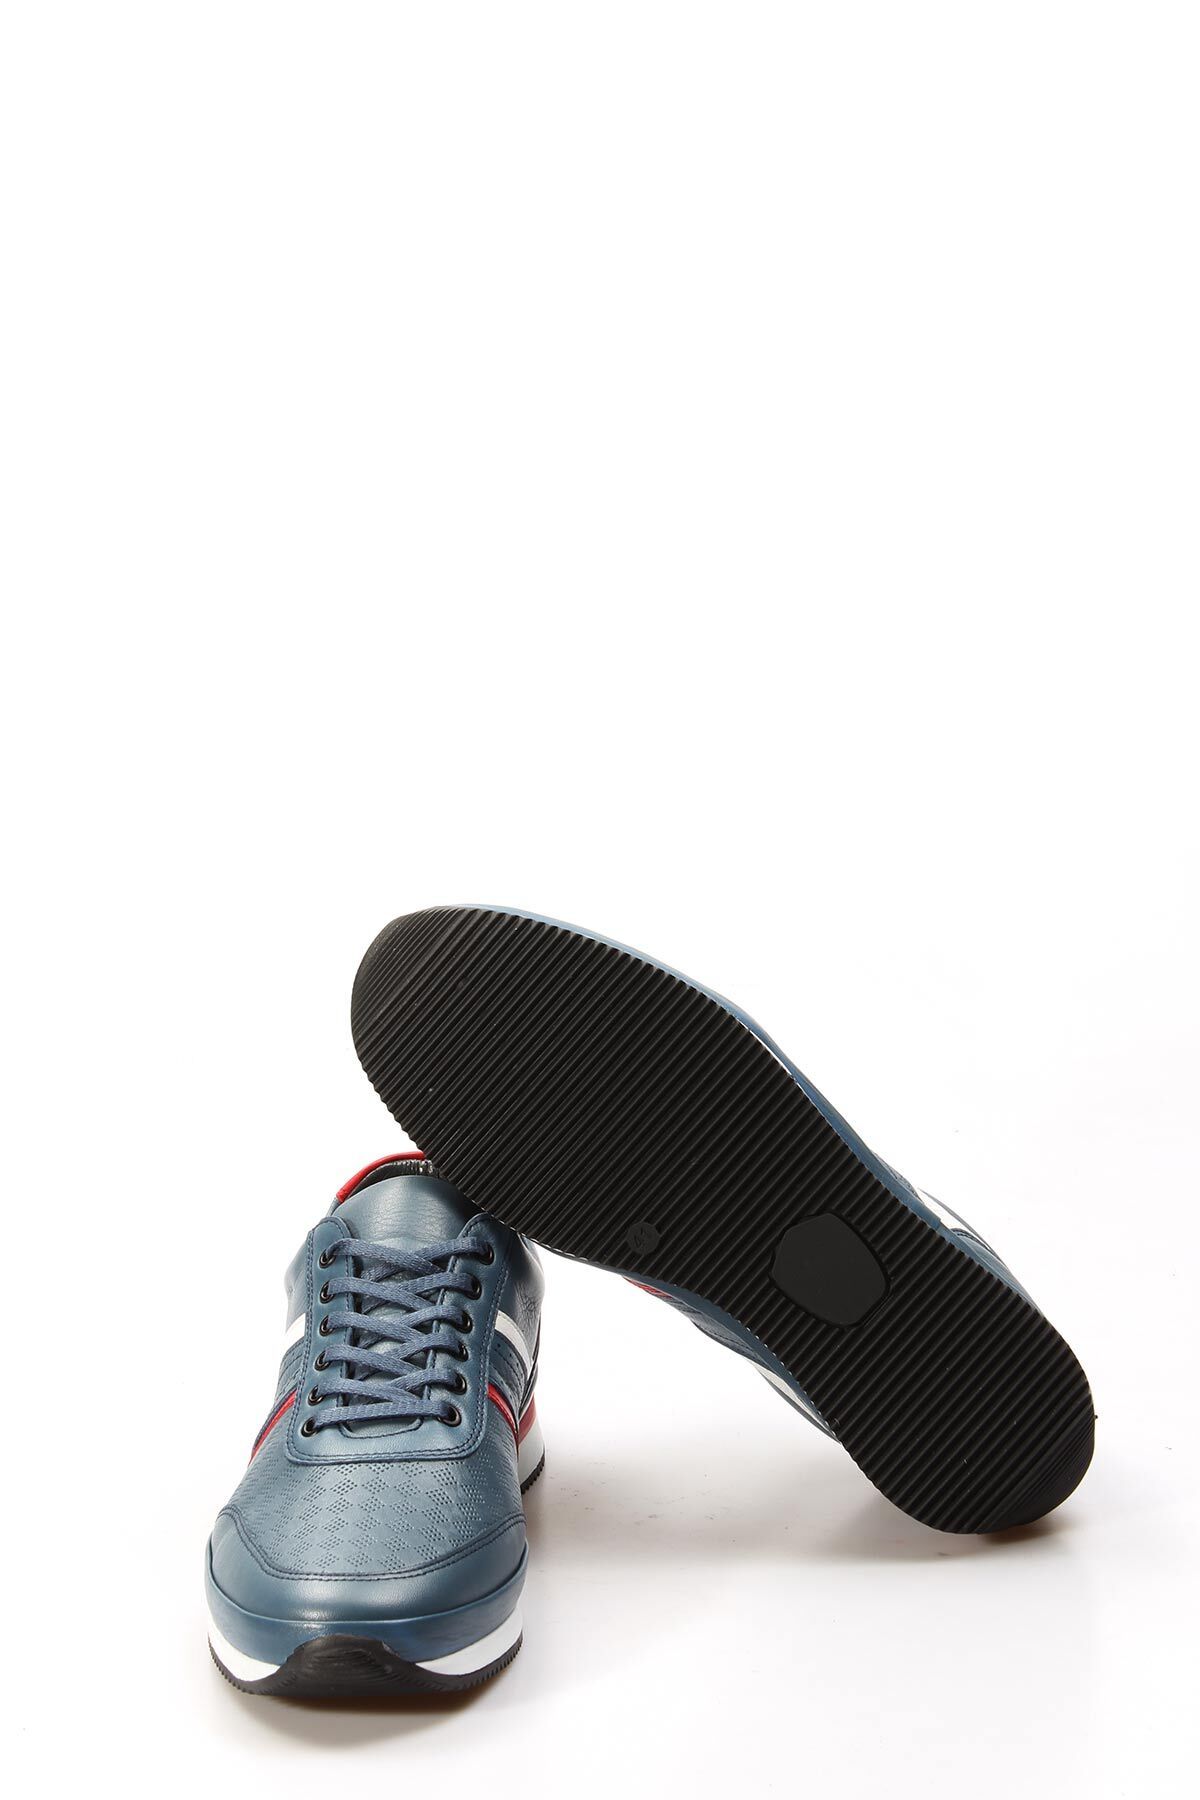 Laviovil Mavi İçi Dışı Gerçek Hakiki Deri Termo Taban Sneaker Erkek Spor Ayakkabı LV33856131190